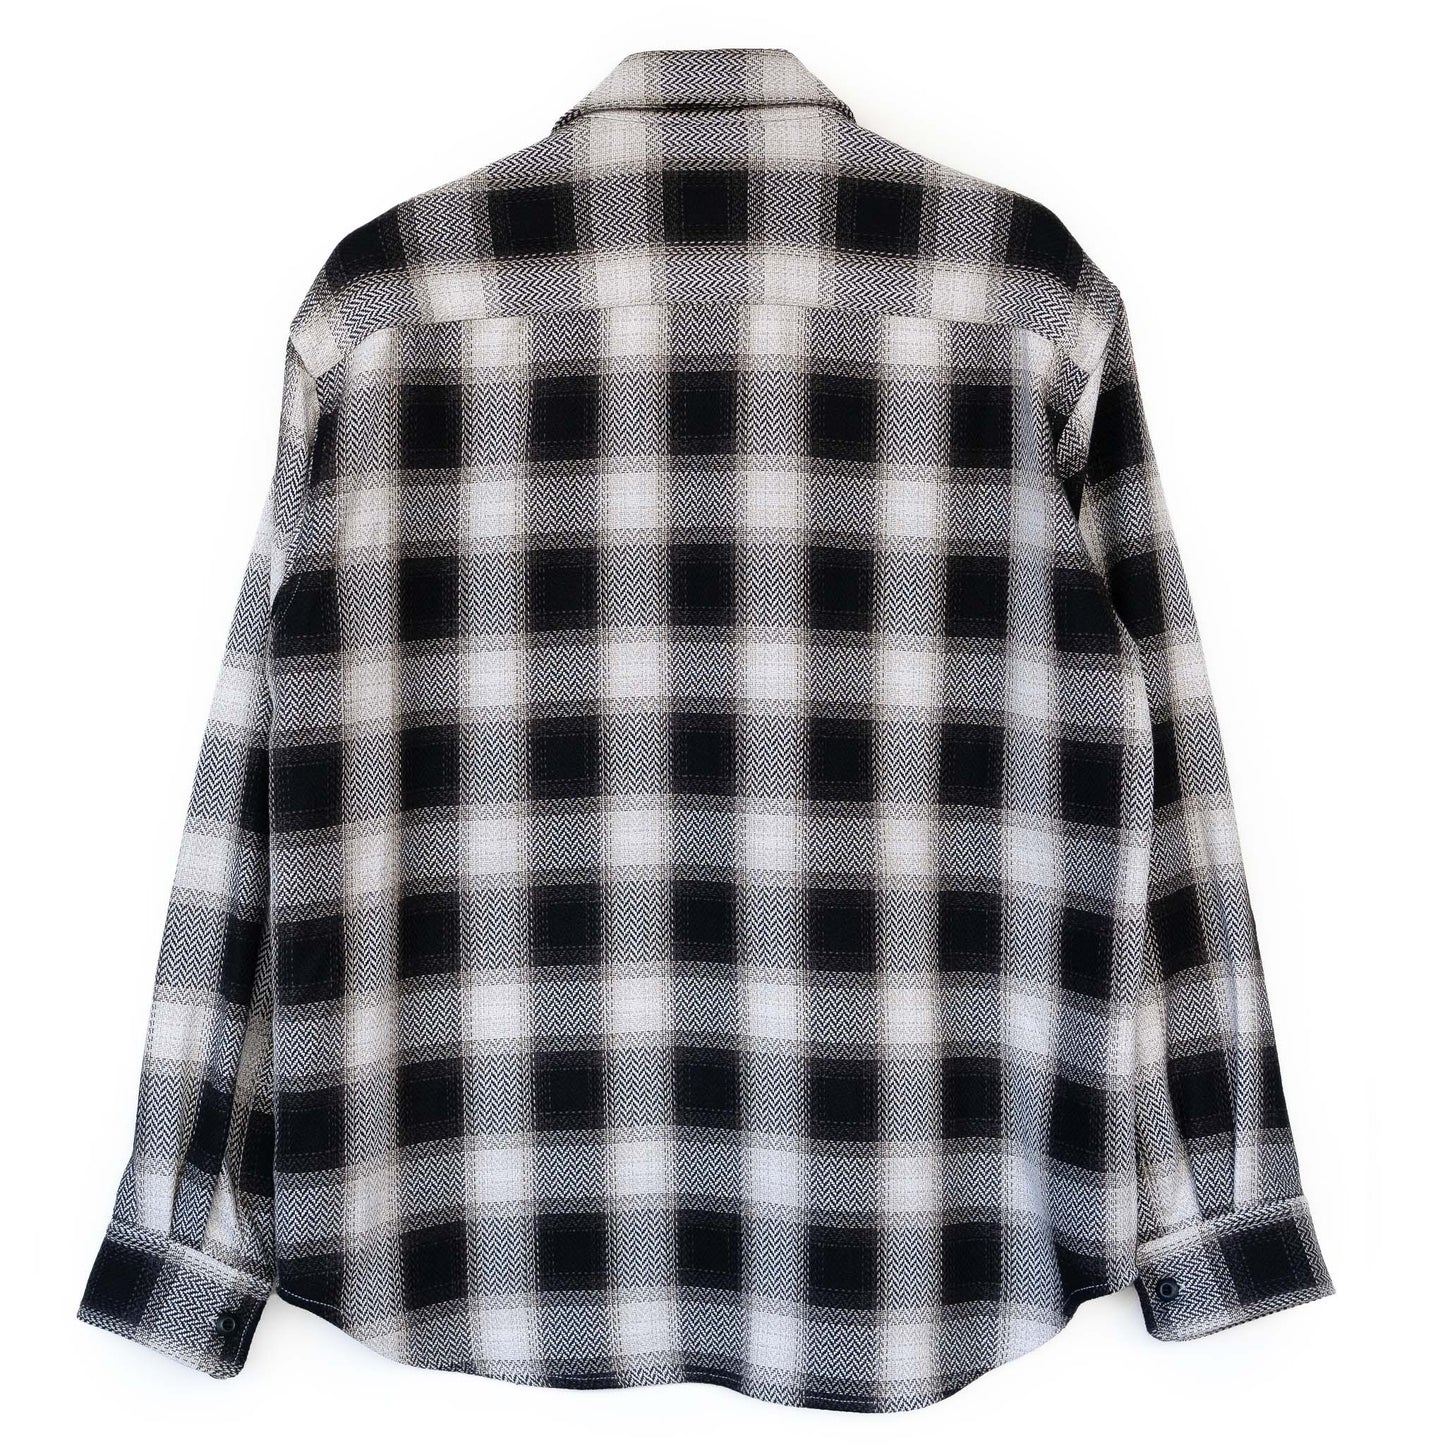 COLONY CLOTHING / ビッグチェック エクスペディションシャツ② / CC2202-SJ01-1